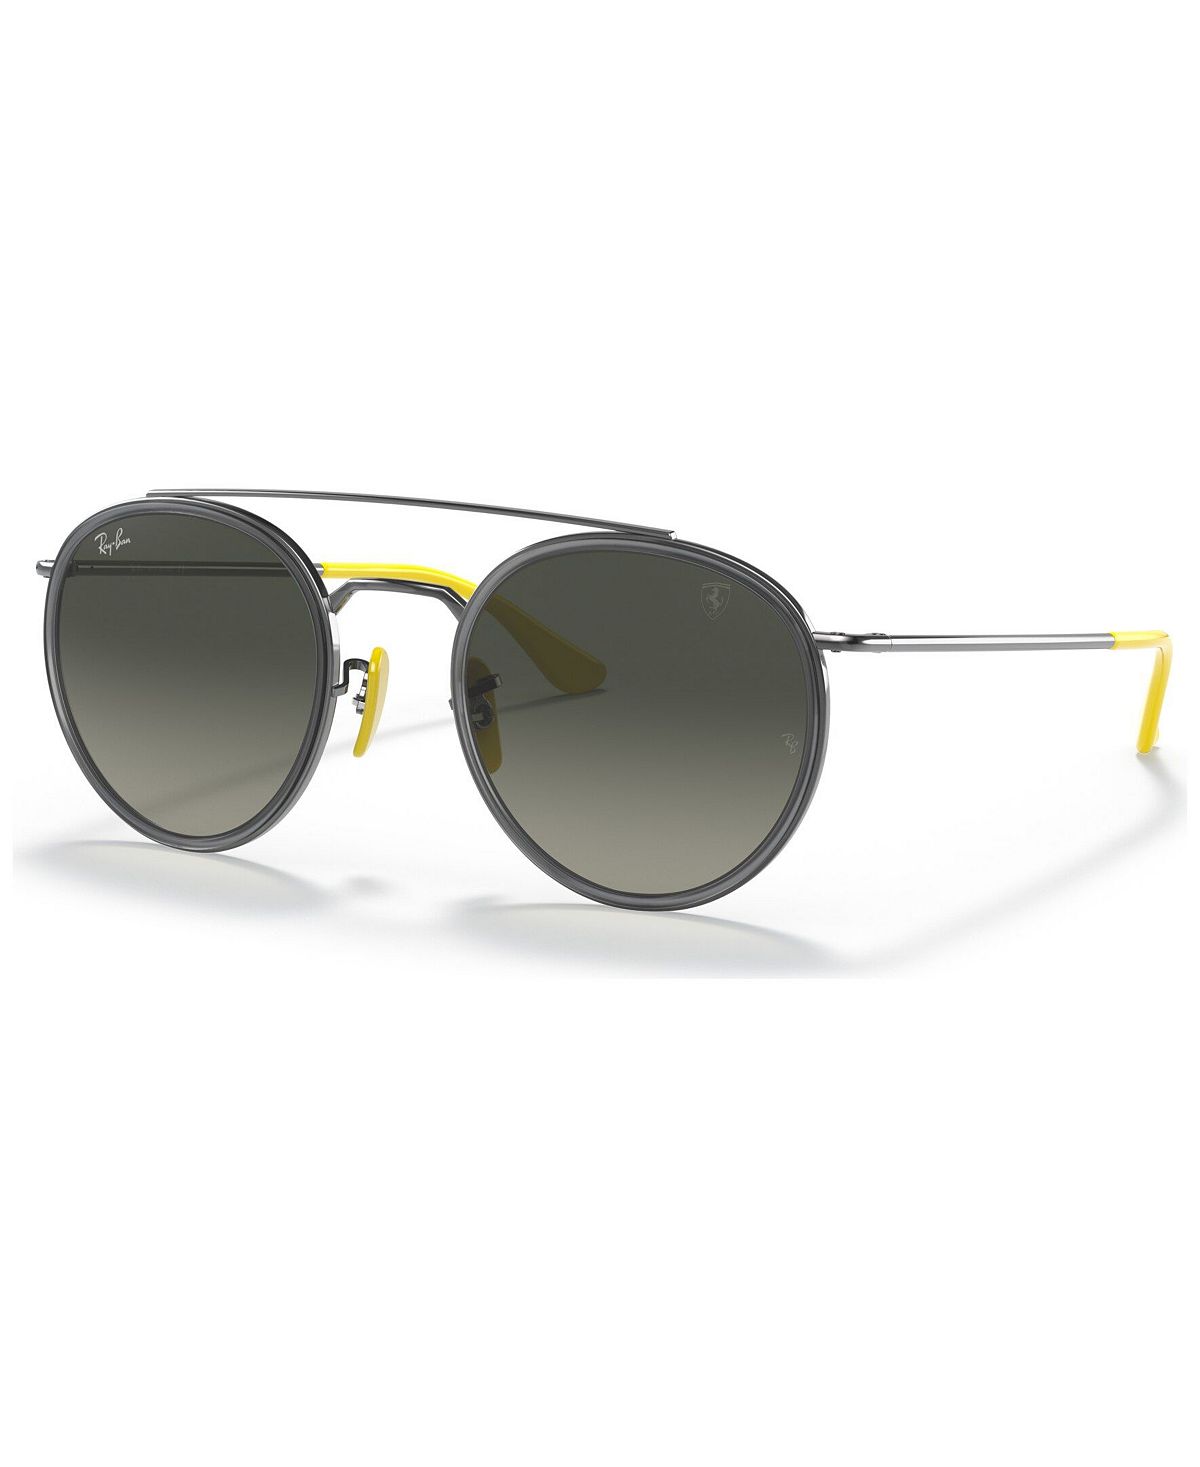 Мужские солнцезащитные очки, RB3647M Scuderia Ferrari Collection 51 Ray-Ban